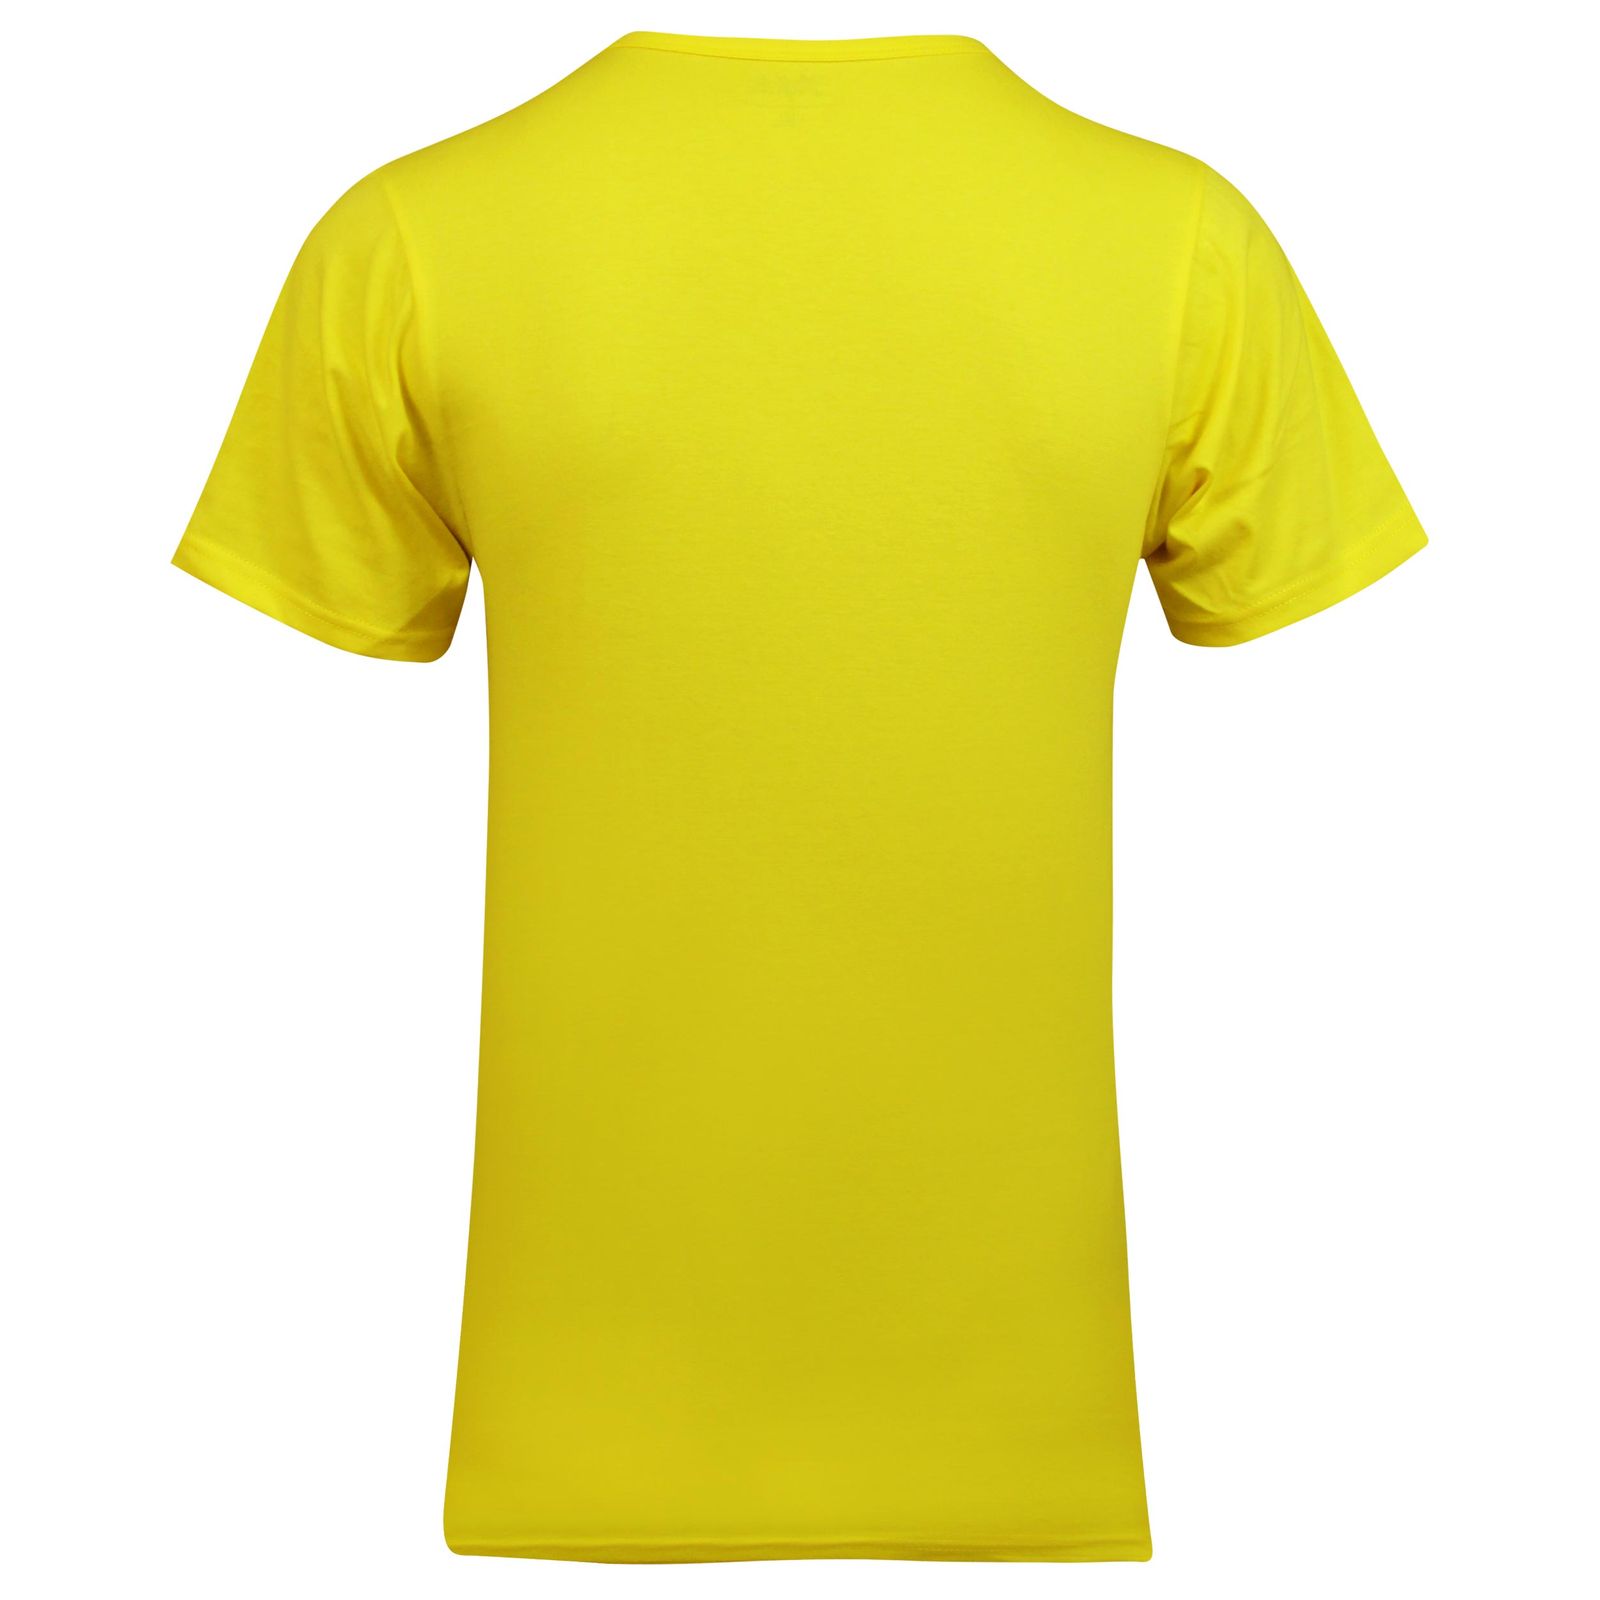 زیرپوش آستین دار مردانه ماییلدا مدل پنبه ای کد 4710 رنگ زرد -  - 4